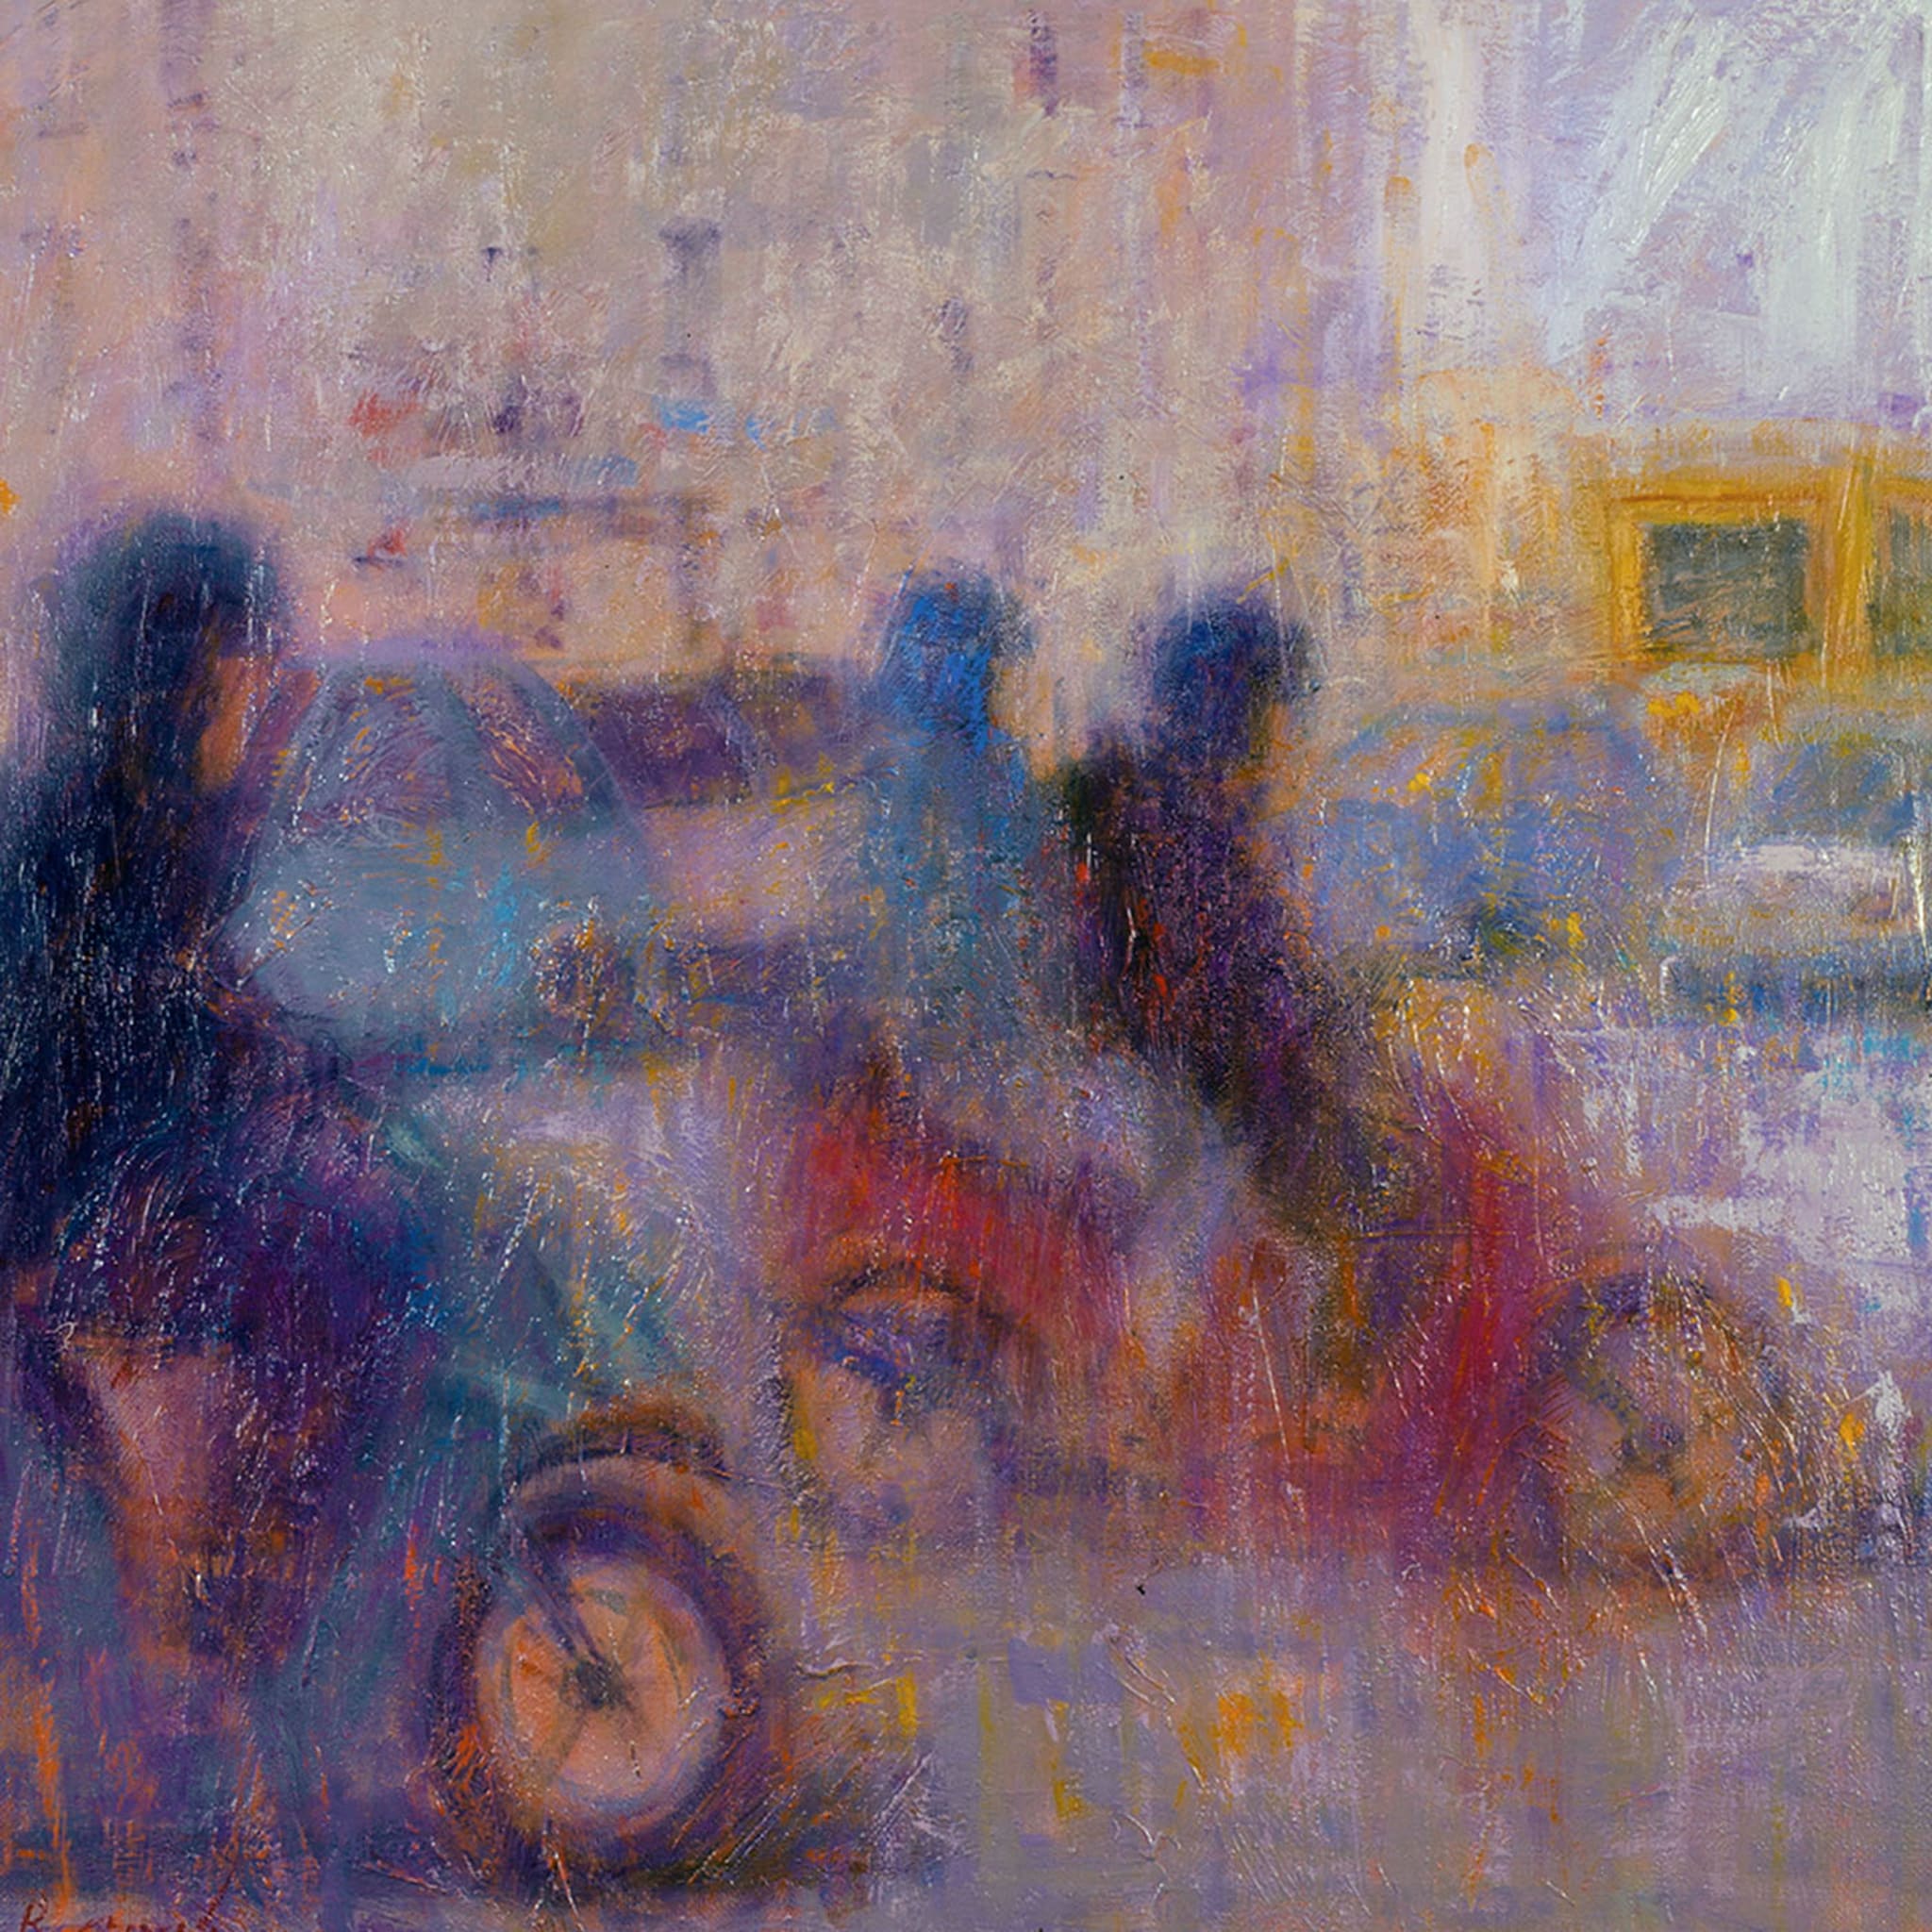 Nel Traffico Painting  by Renato Criscuolo - Alternative view 2